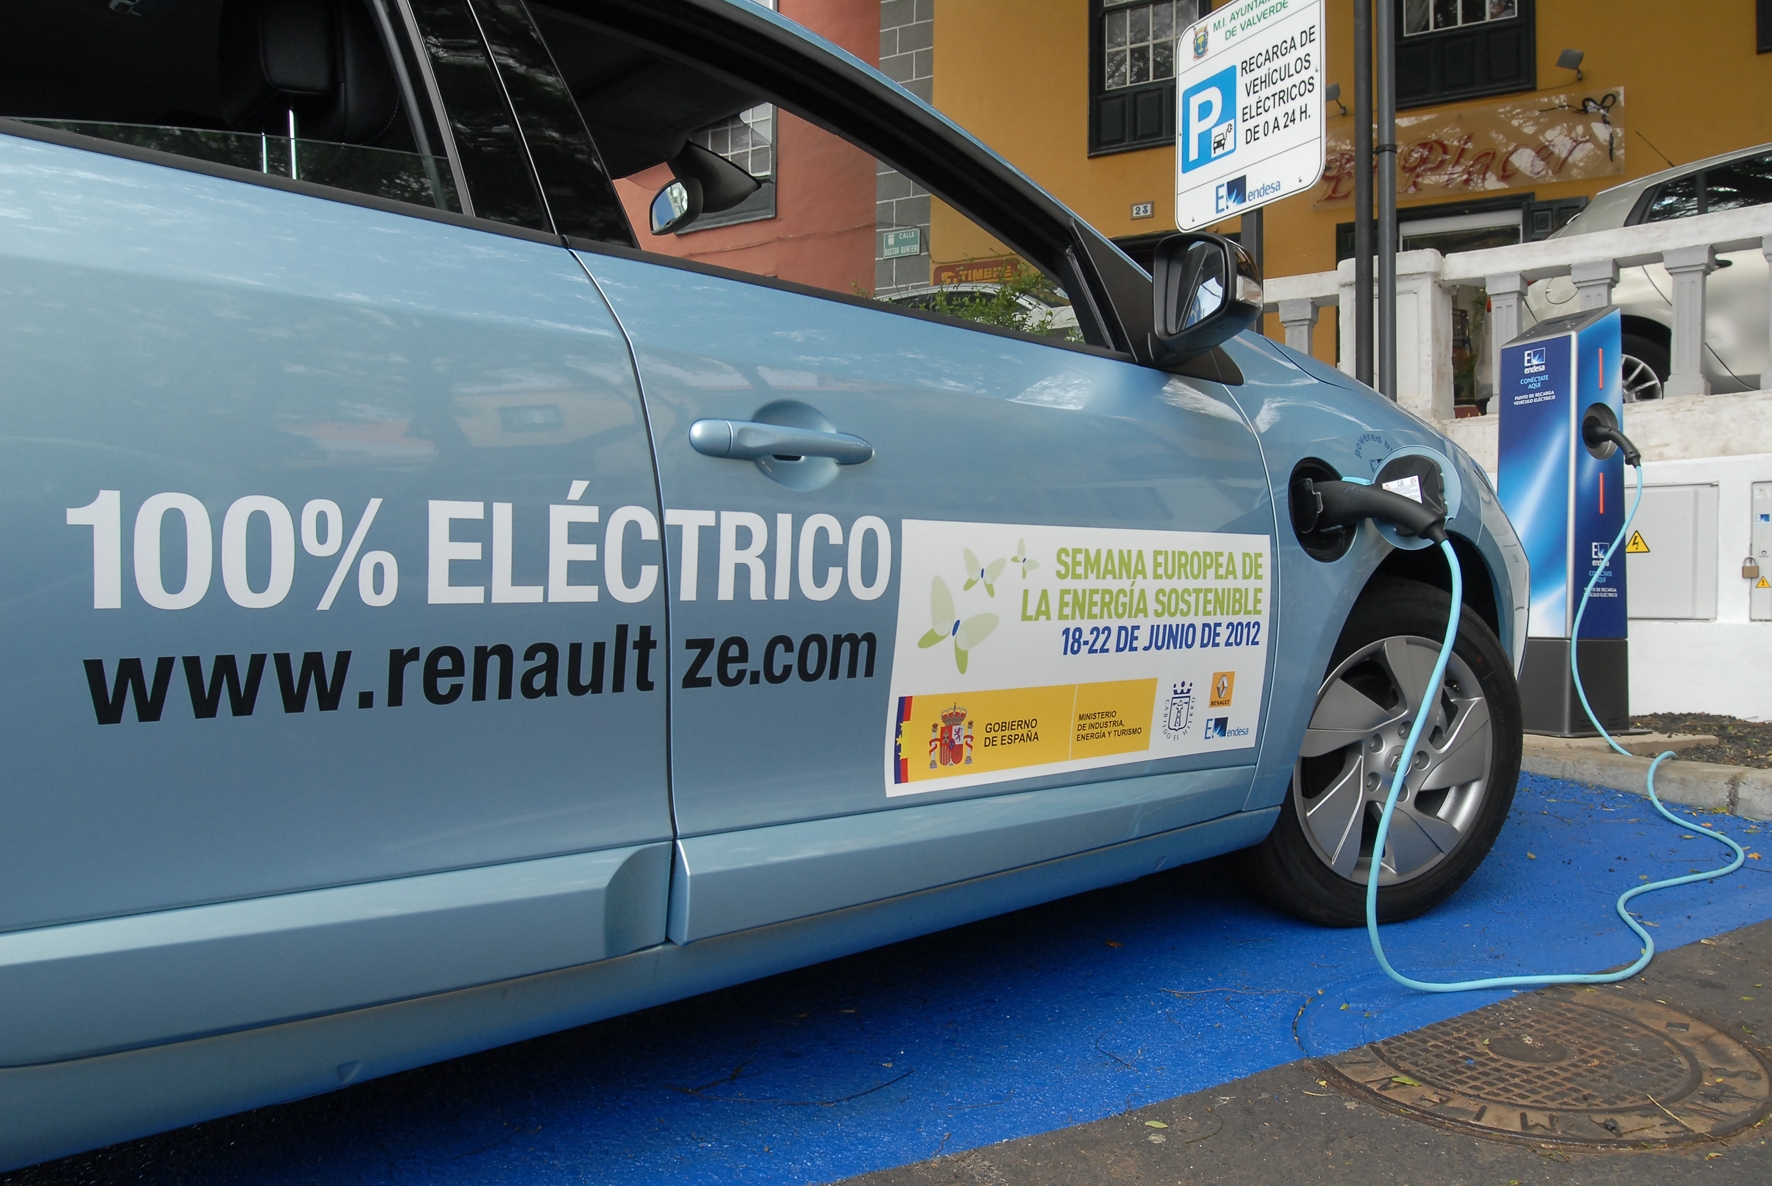 Gorona del Viento saca a licitación 9 puntos de recarga para vehículos eléctricos en El Hierro